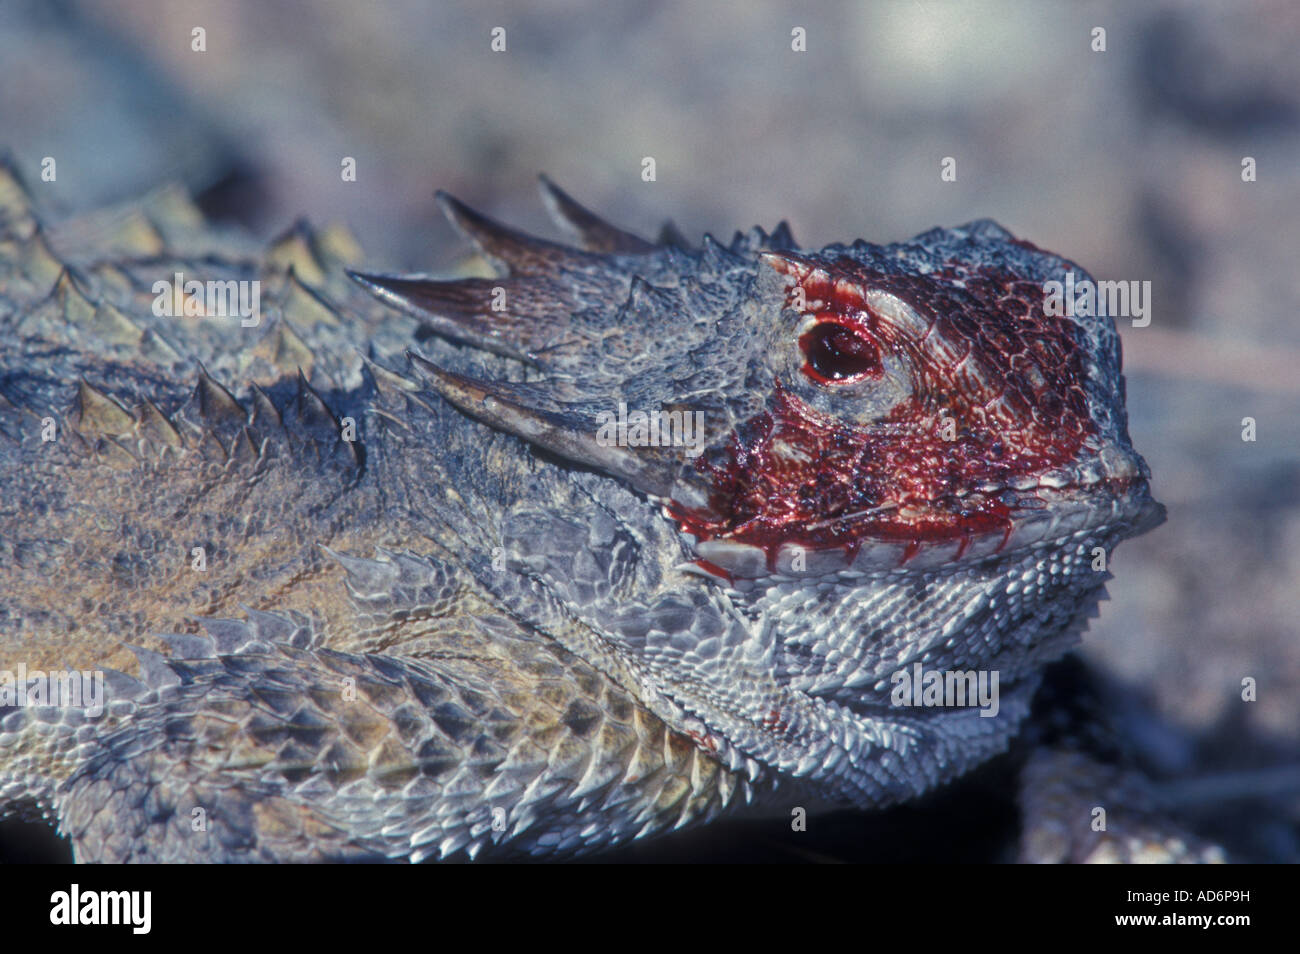 Regal cornuto Lizard Phrynosoma solare Arizona comportamento difensivo Foto Stock